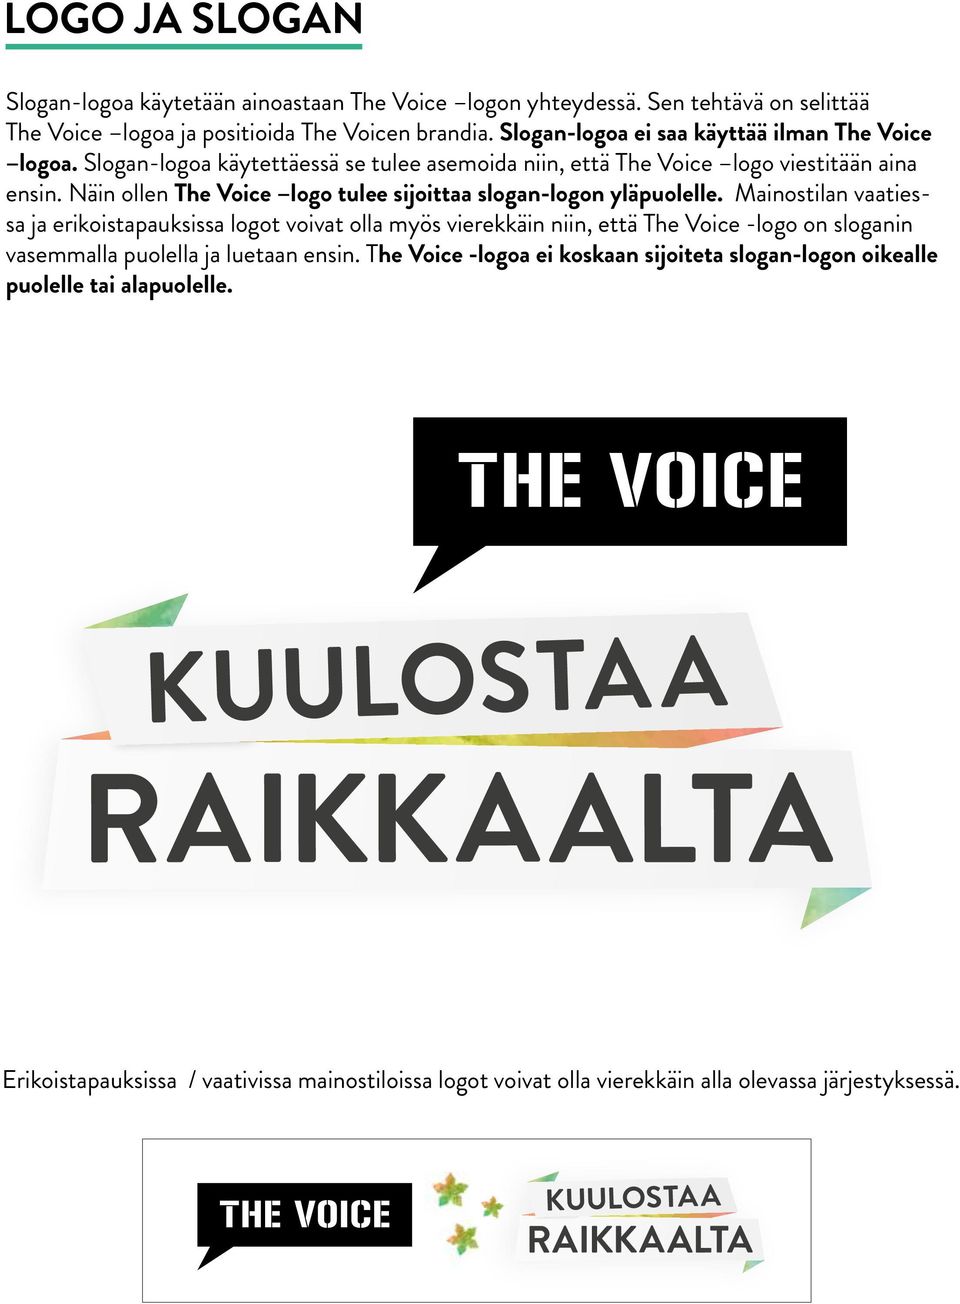 Näin ollen The Voice logo tulee sijoittaa slogan-logon yläpuolelle.